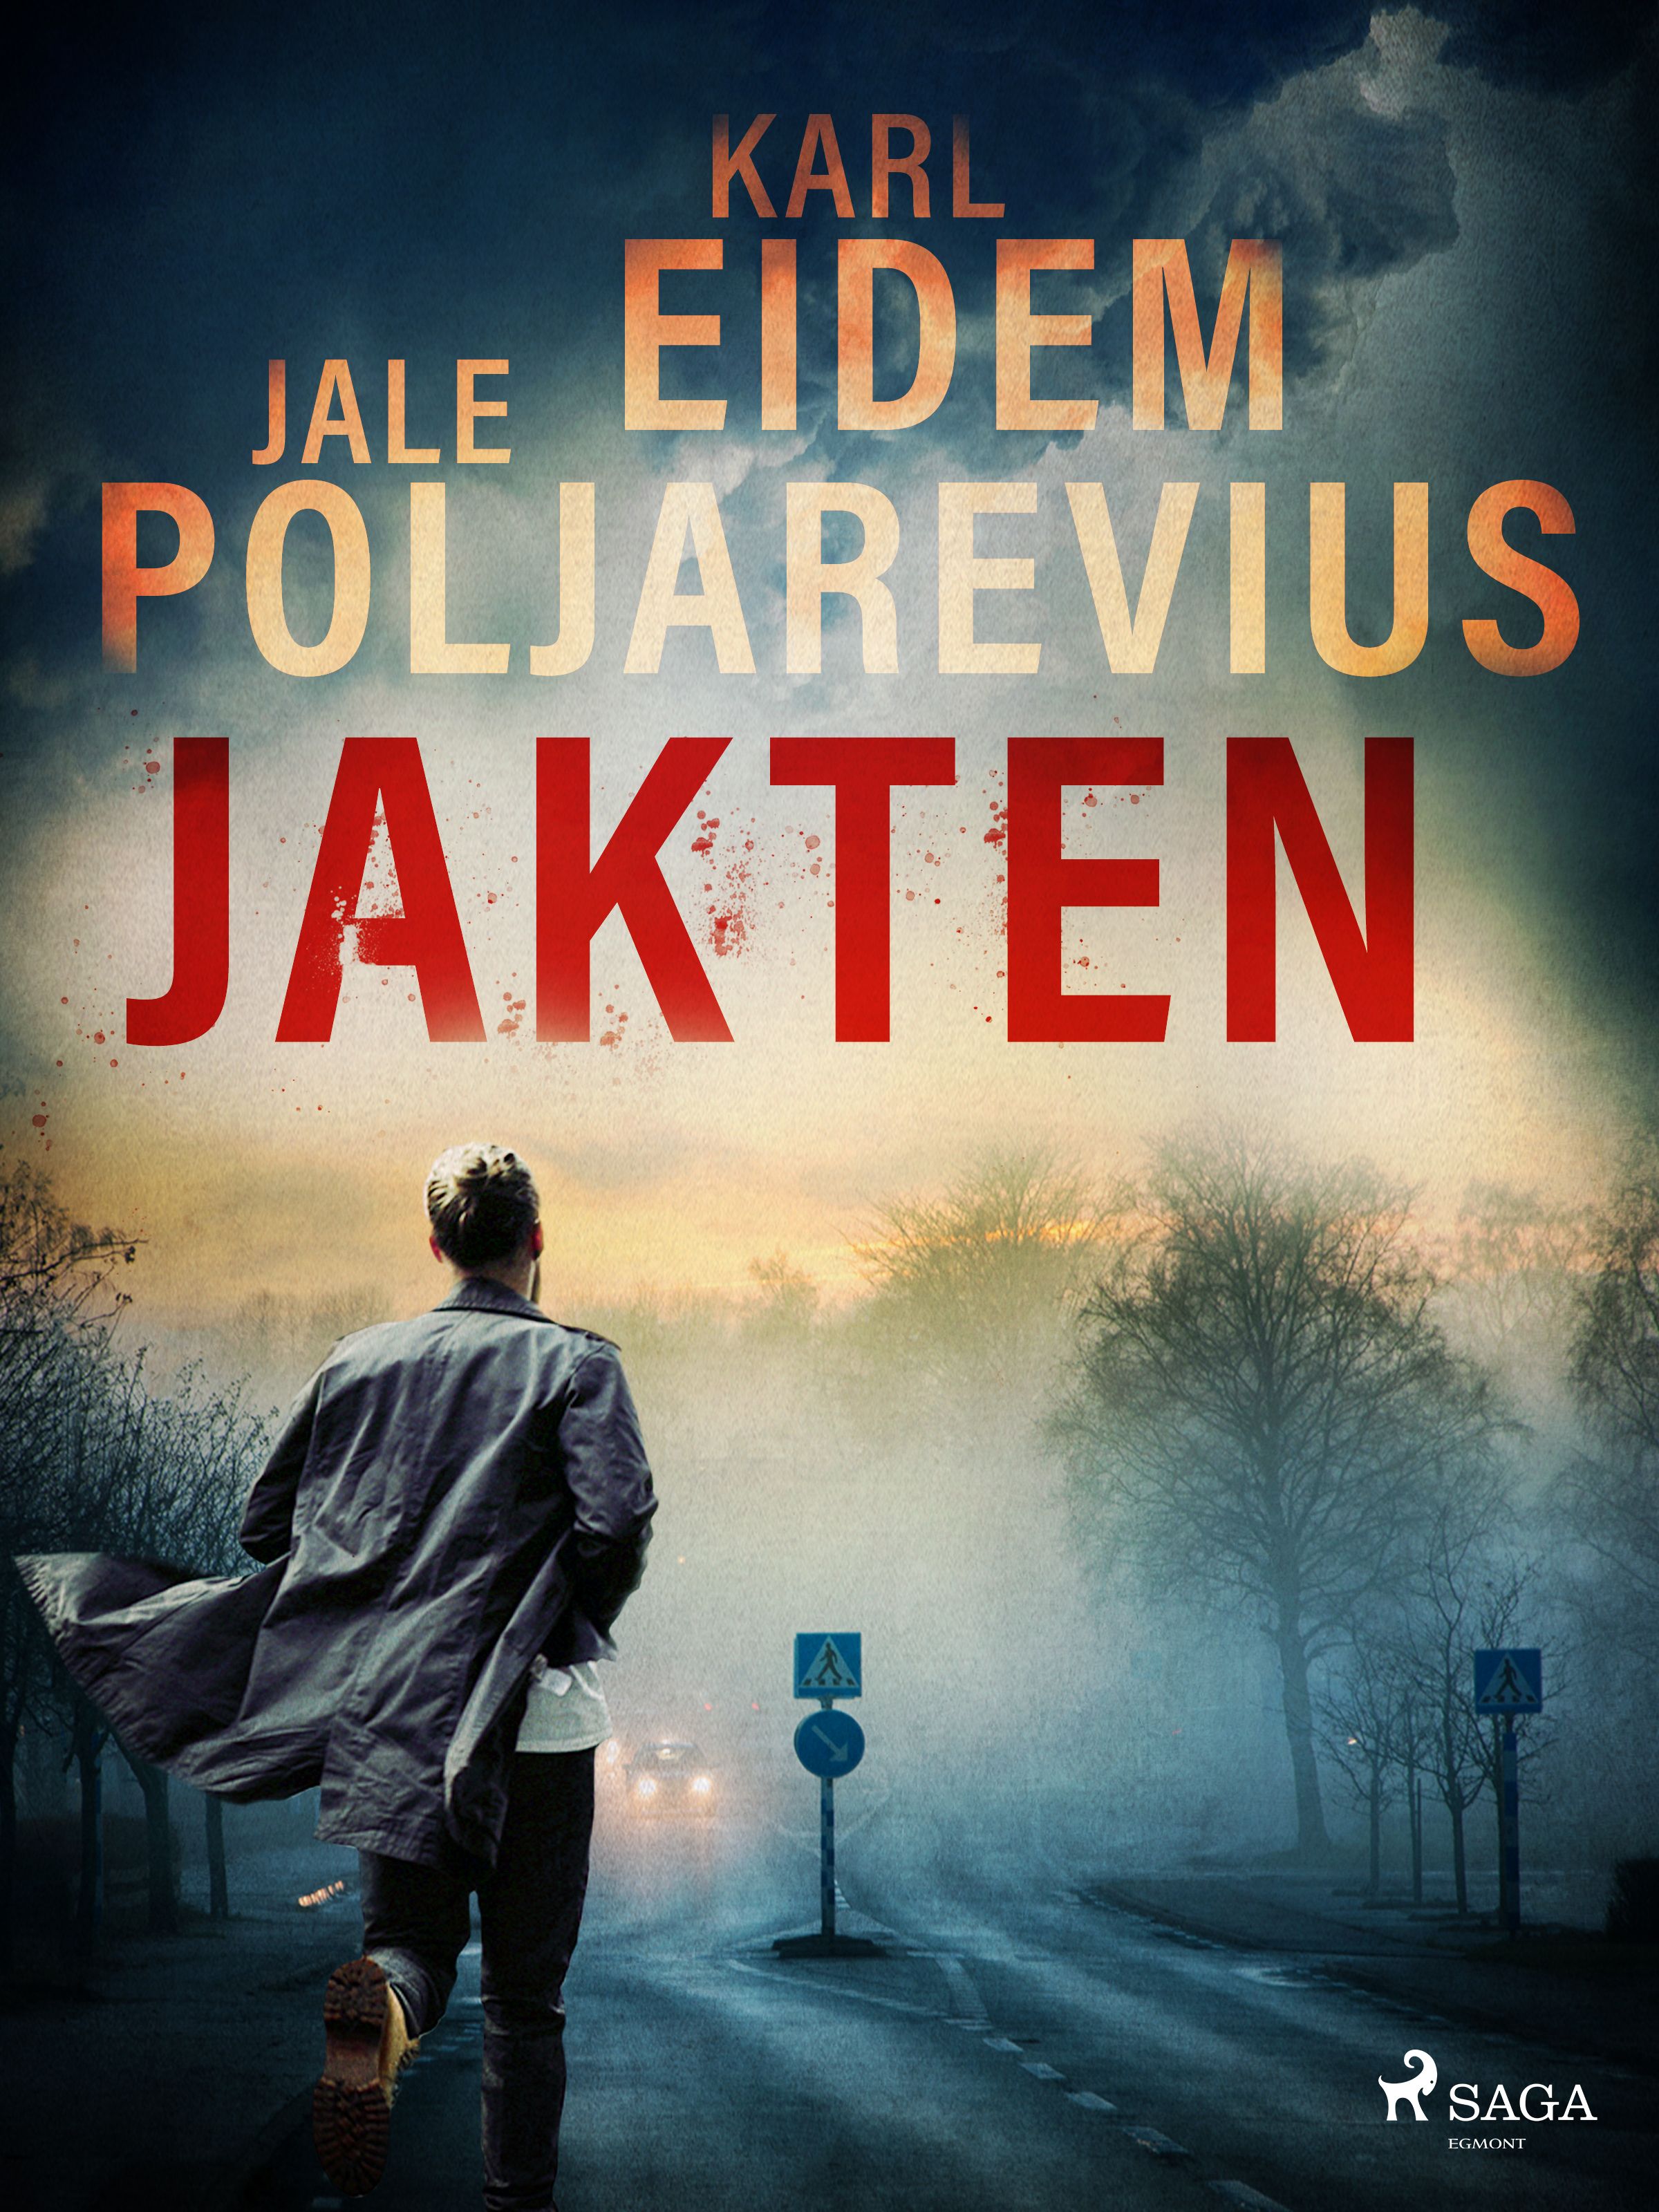 Jakten, e-bok av Karl Eidem, Jale Poljarevius